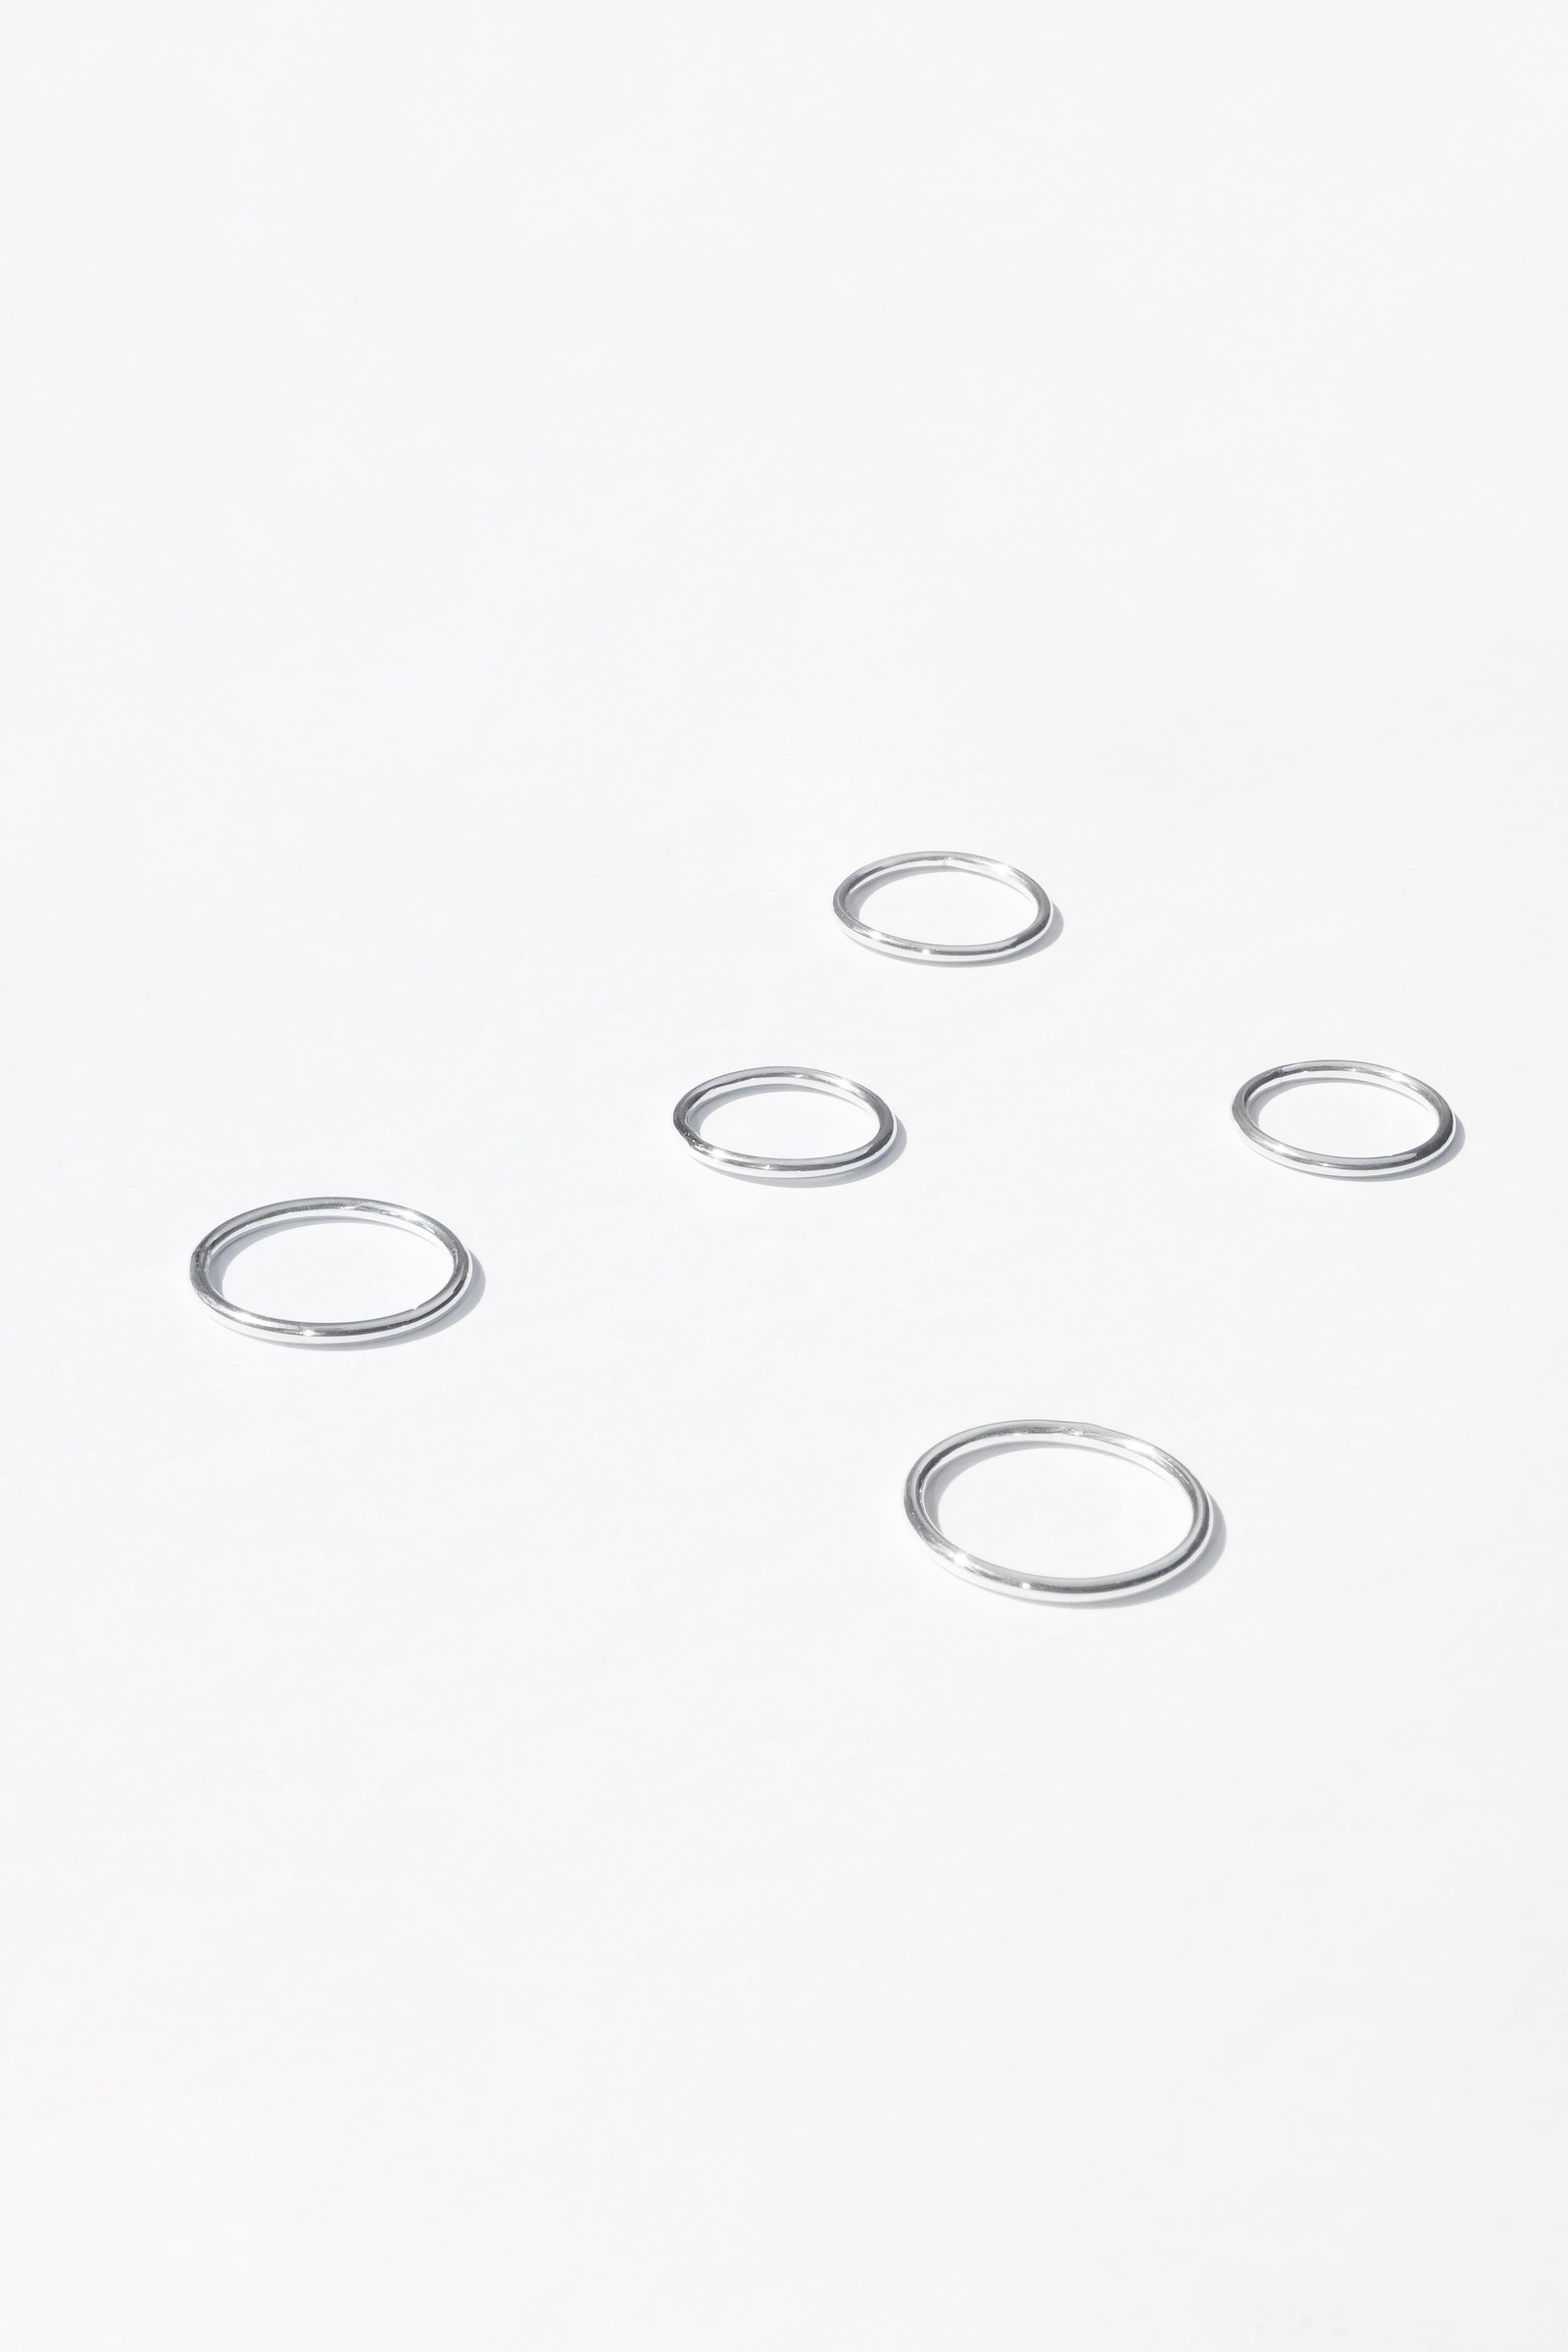 Basic Silver Ring1